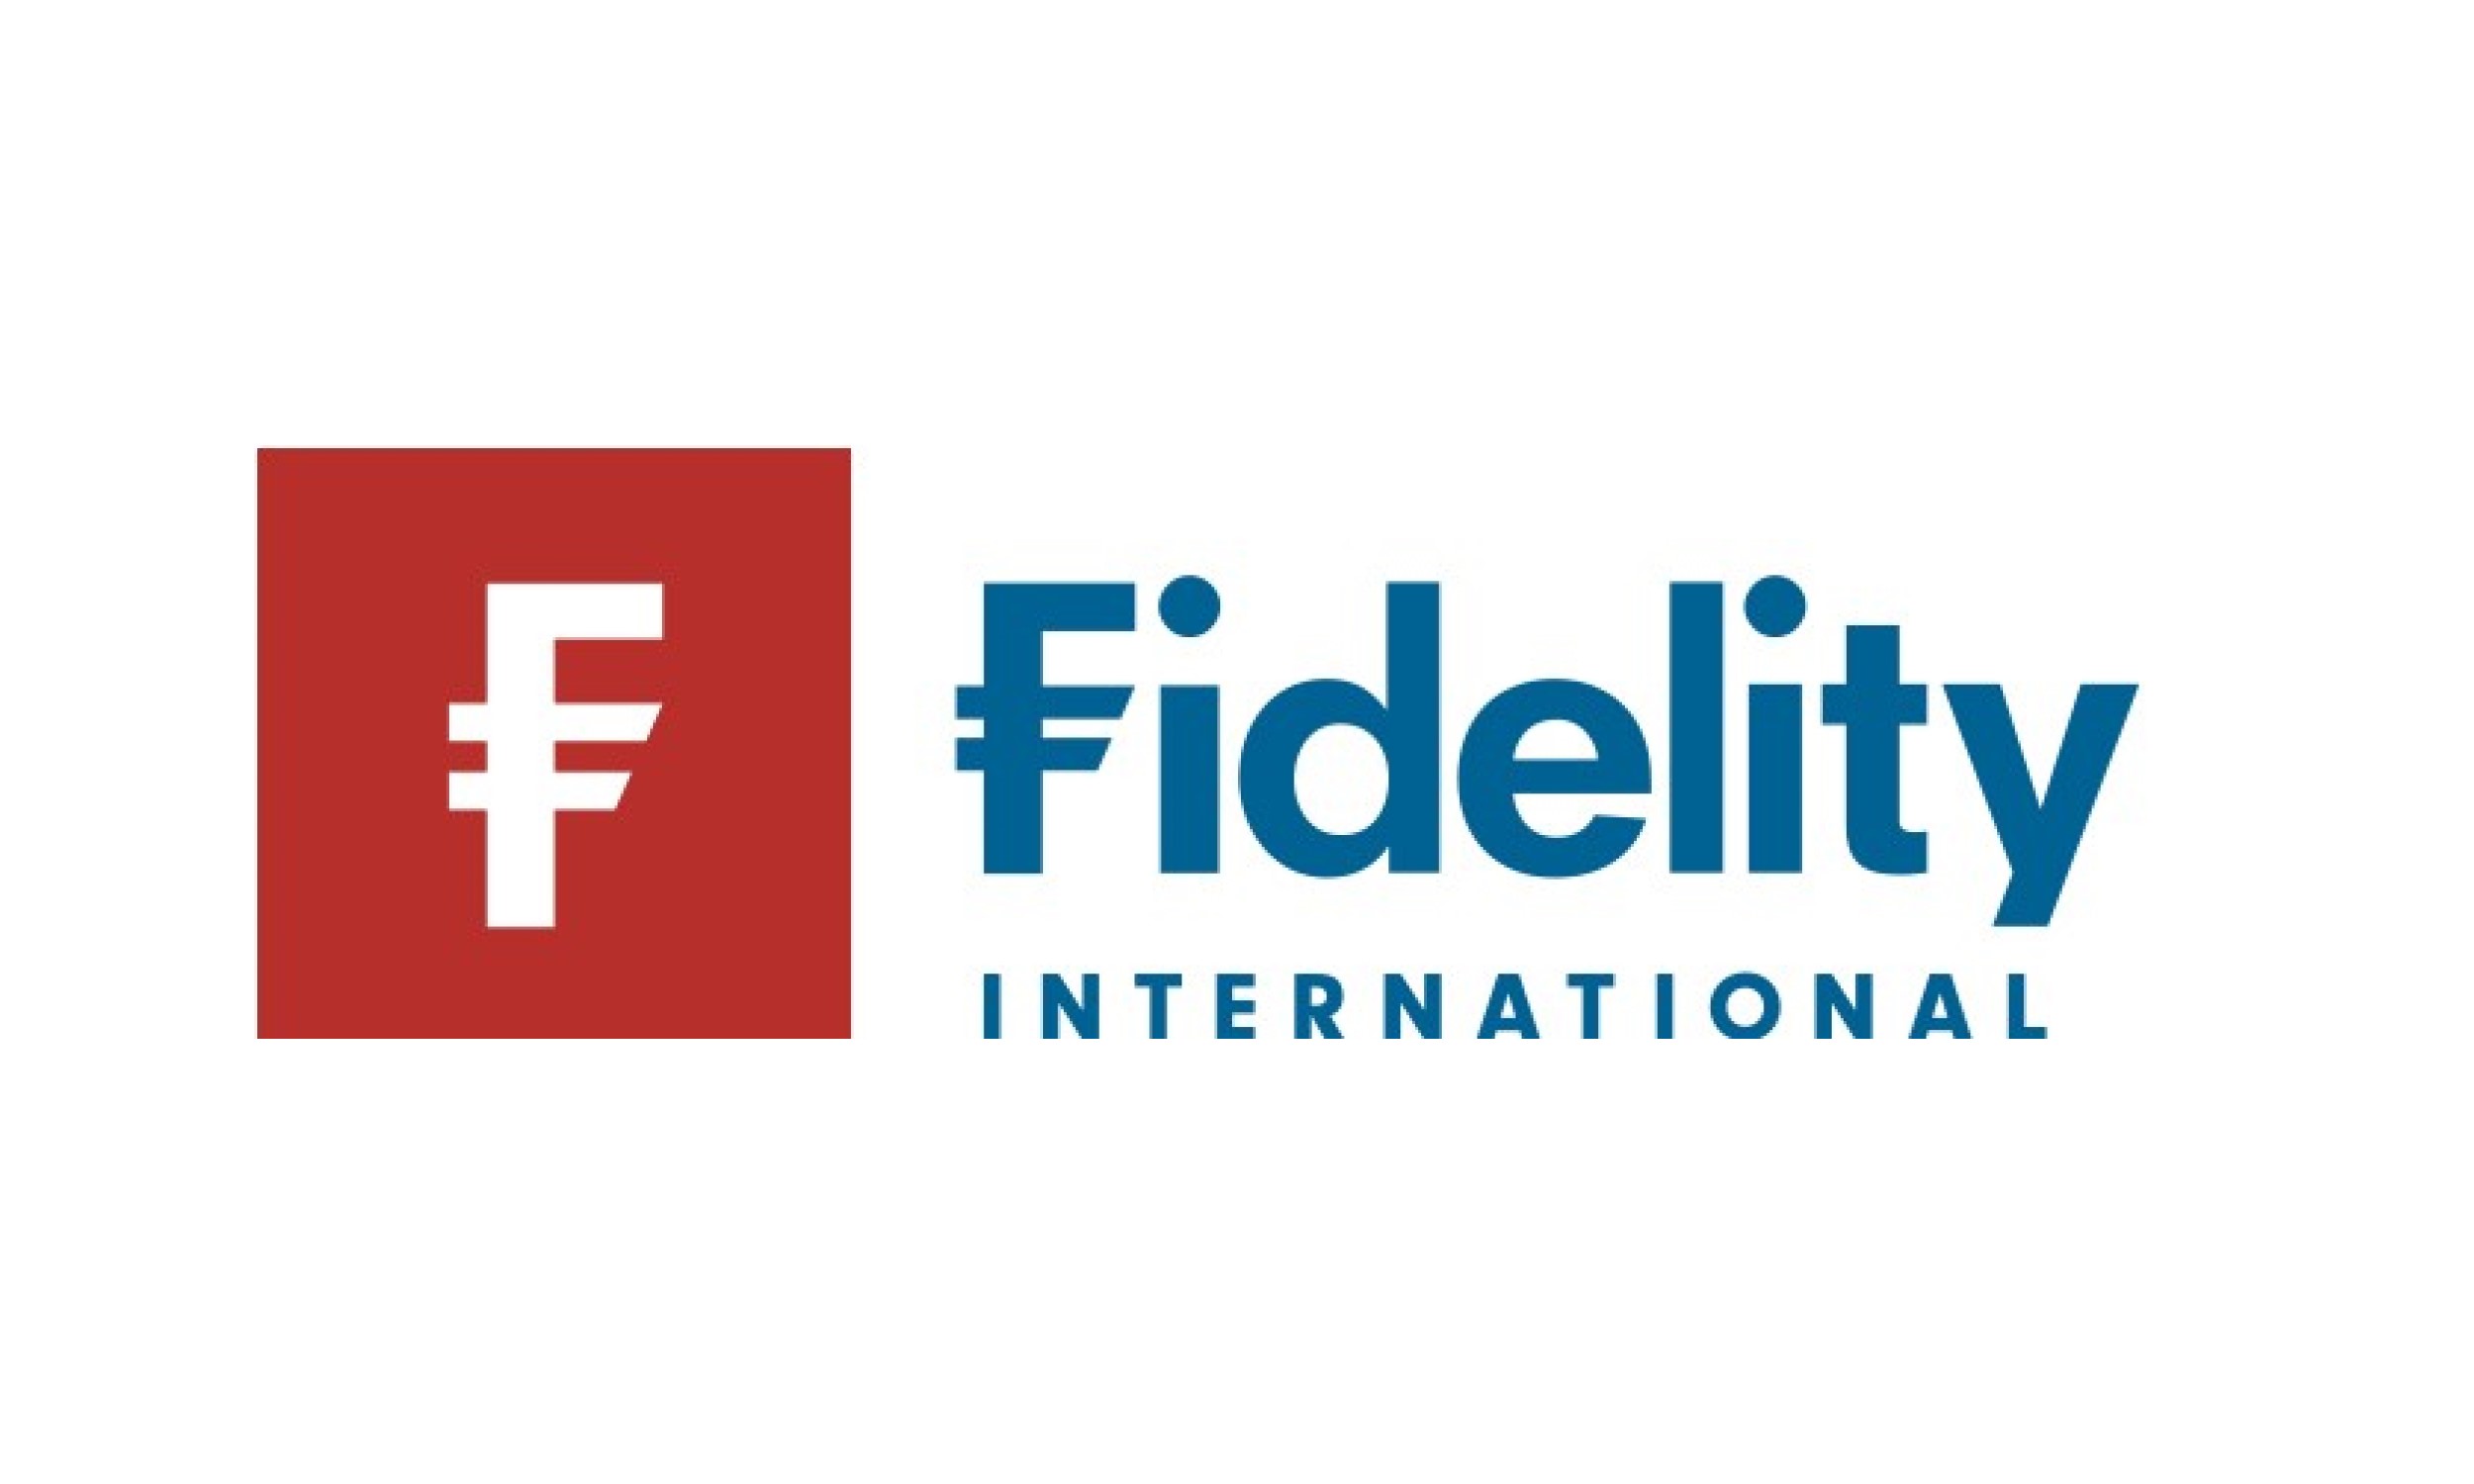 fidelity_international_rgb_fc  Copy 4